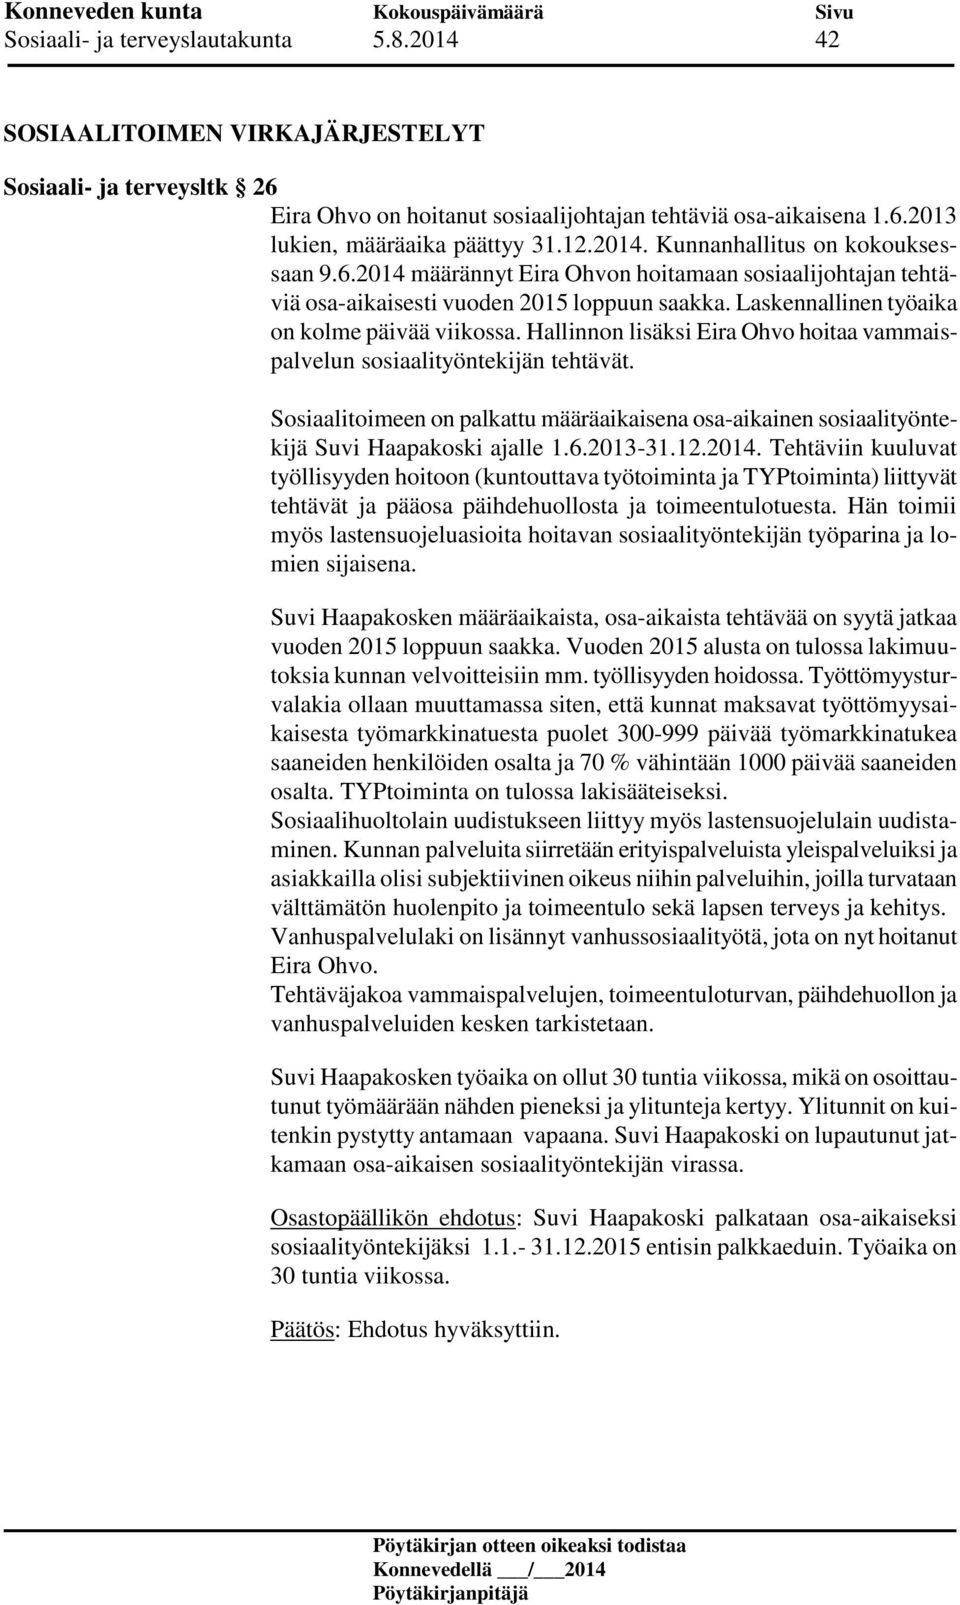 Hallinnon lisäksi Eira Ohvo hoitaa vammaispalvelun sosiaalityöntekijän tehtävät. Sosiaalitoimeen on palkattu määräaikaisena osa-aikainen sosiaalityöntekijä Suvi Haapakoski ajalle 1.6.2013-31.12.2014.